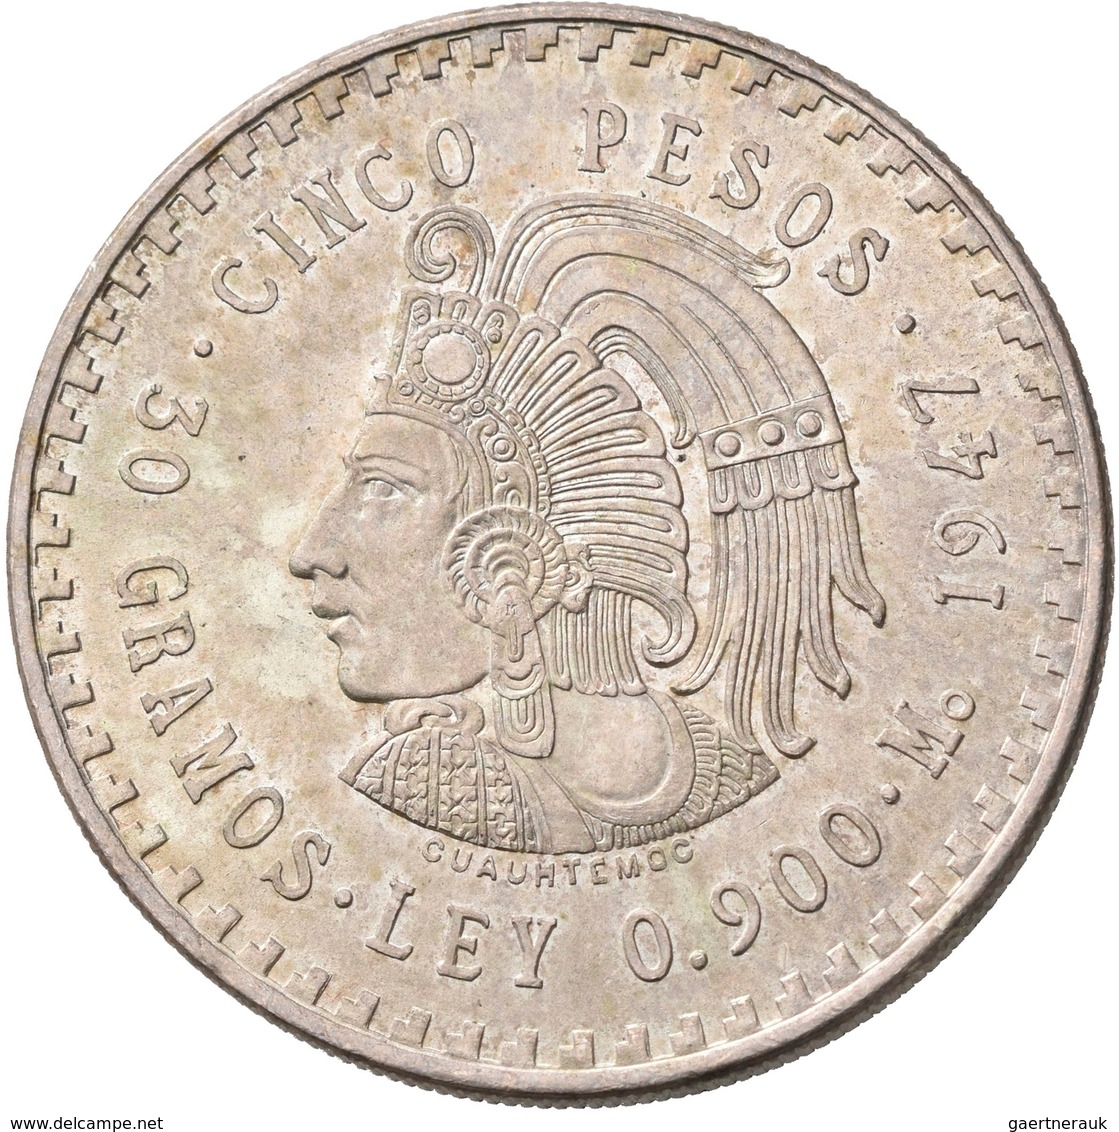 Mexiko: Lot 7 Silbermünzen; 8 Reales 1890, 1 Peso 1910, 2 Pesos 1921, 5 Pesos 1947, 5 Pesos 1953, 25